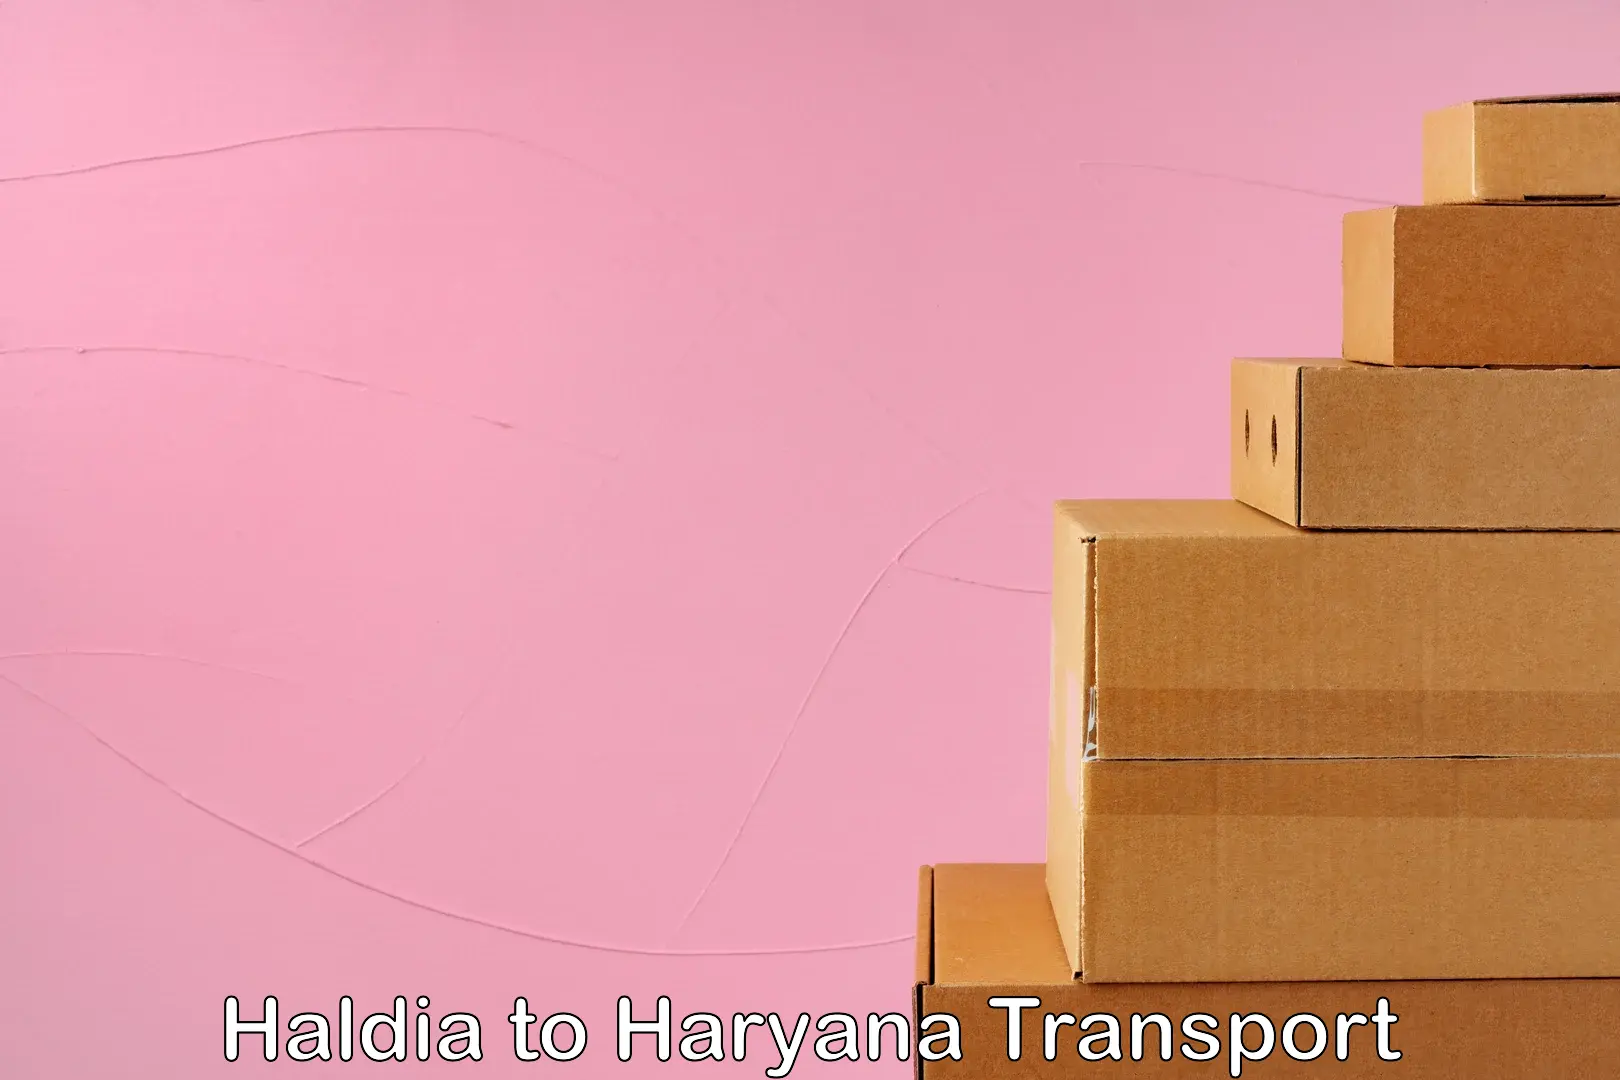 Online transport service Haldia to Guhla